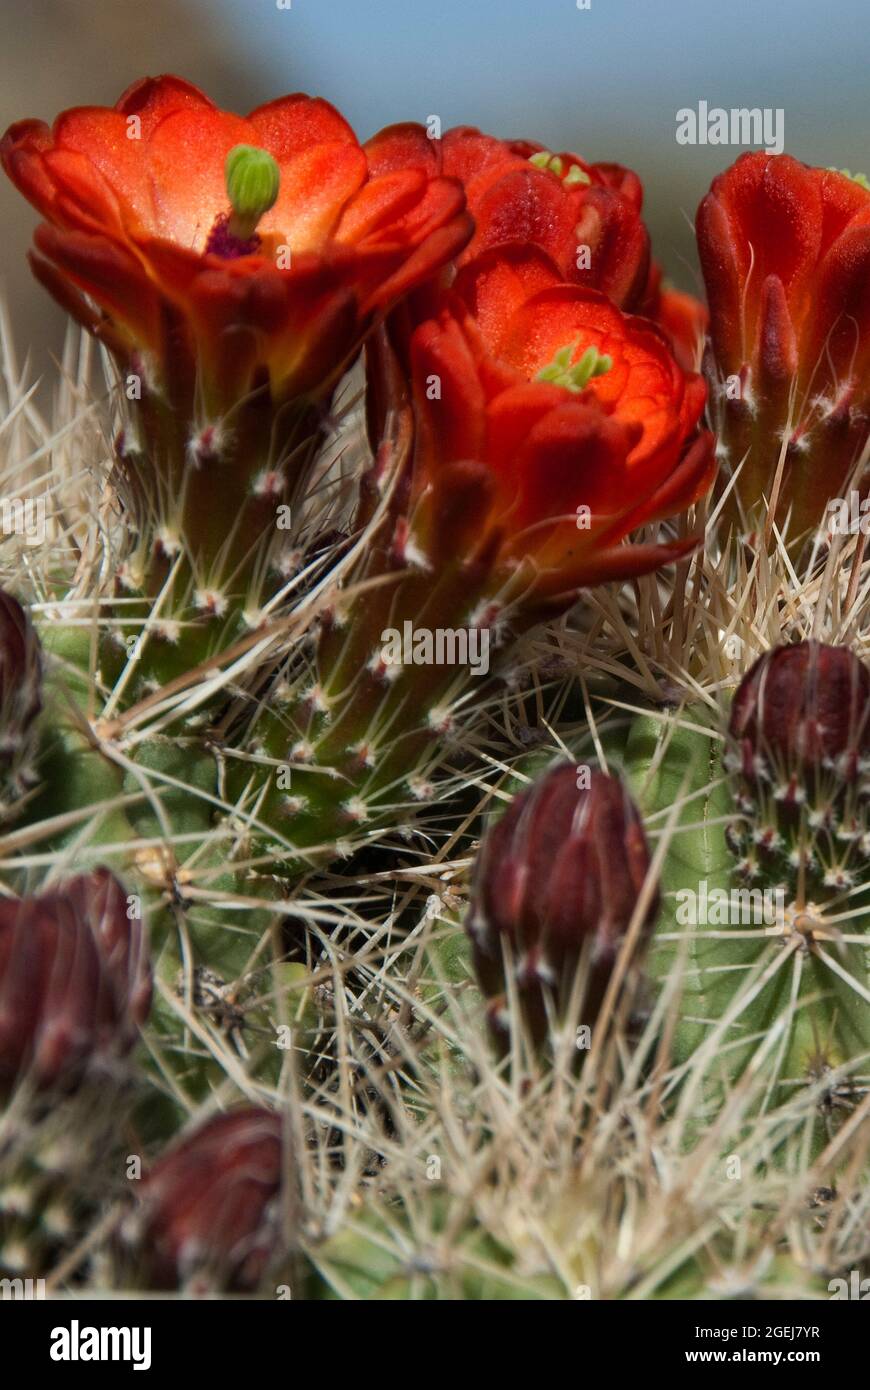 Claret Cup Cactus, Echinocereus triglochidiatus Stock Photo